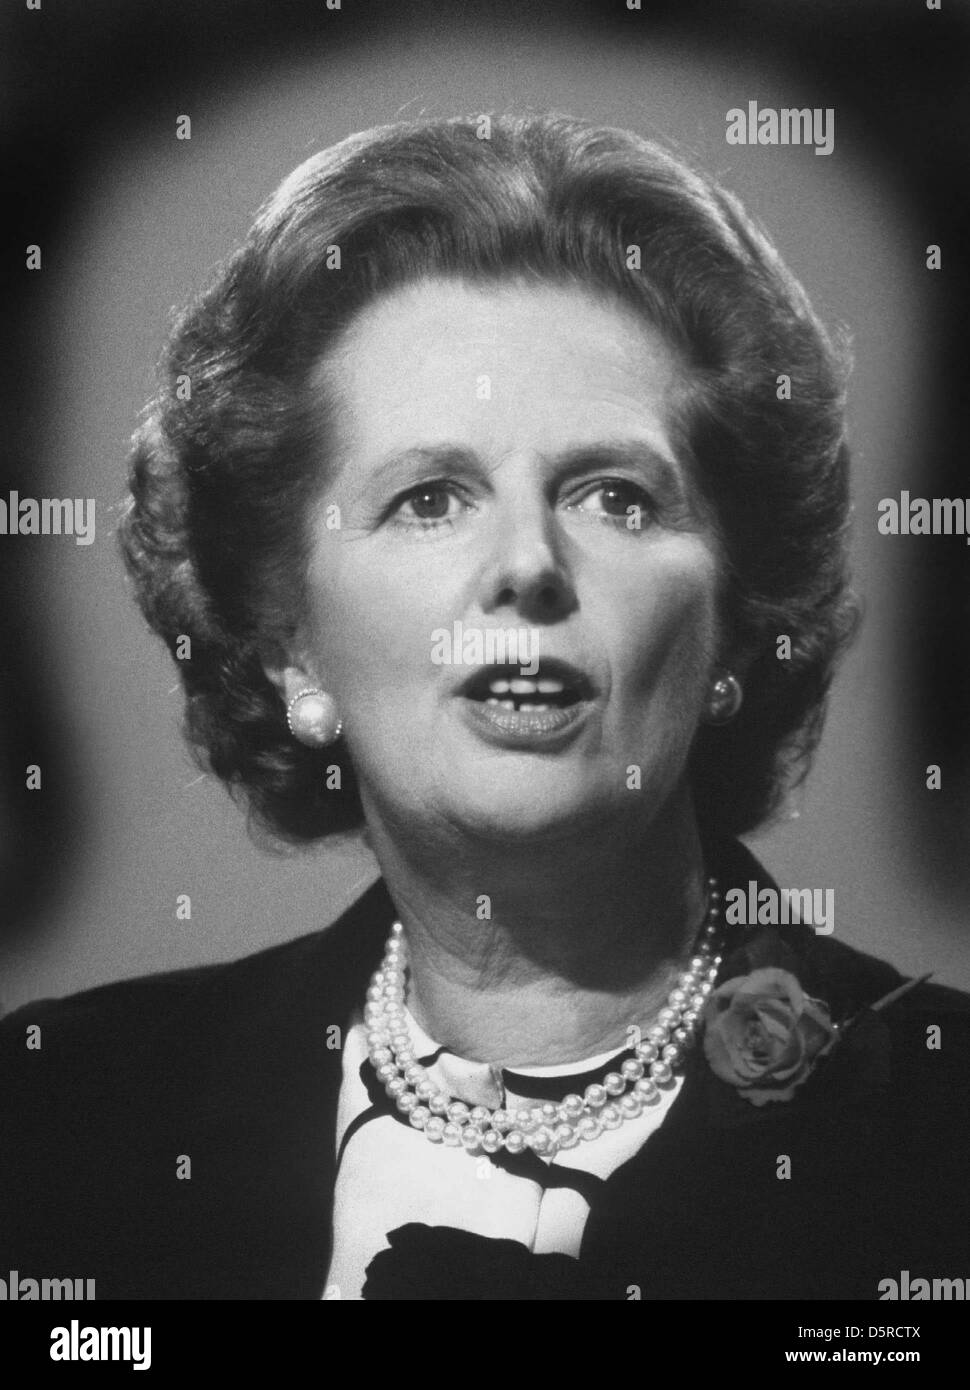 Archivo: Lady Margaret Thatcher murió hoy 8 de abril de 2013. Esta foto fue tomada en los 80's cuando estaba a la altura de su energía.Lady Thatcher, de Margaret Thatcher, la Primera Ministra Margaret Thatcher, en 1980 a la altura de su poder. Crédito: David Cole / Alamy Live News Foto de stock